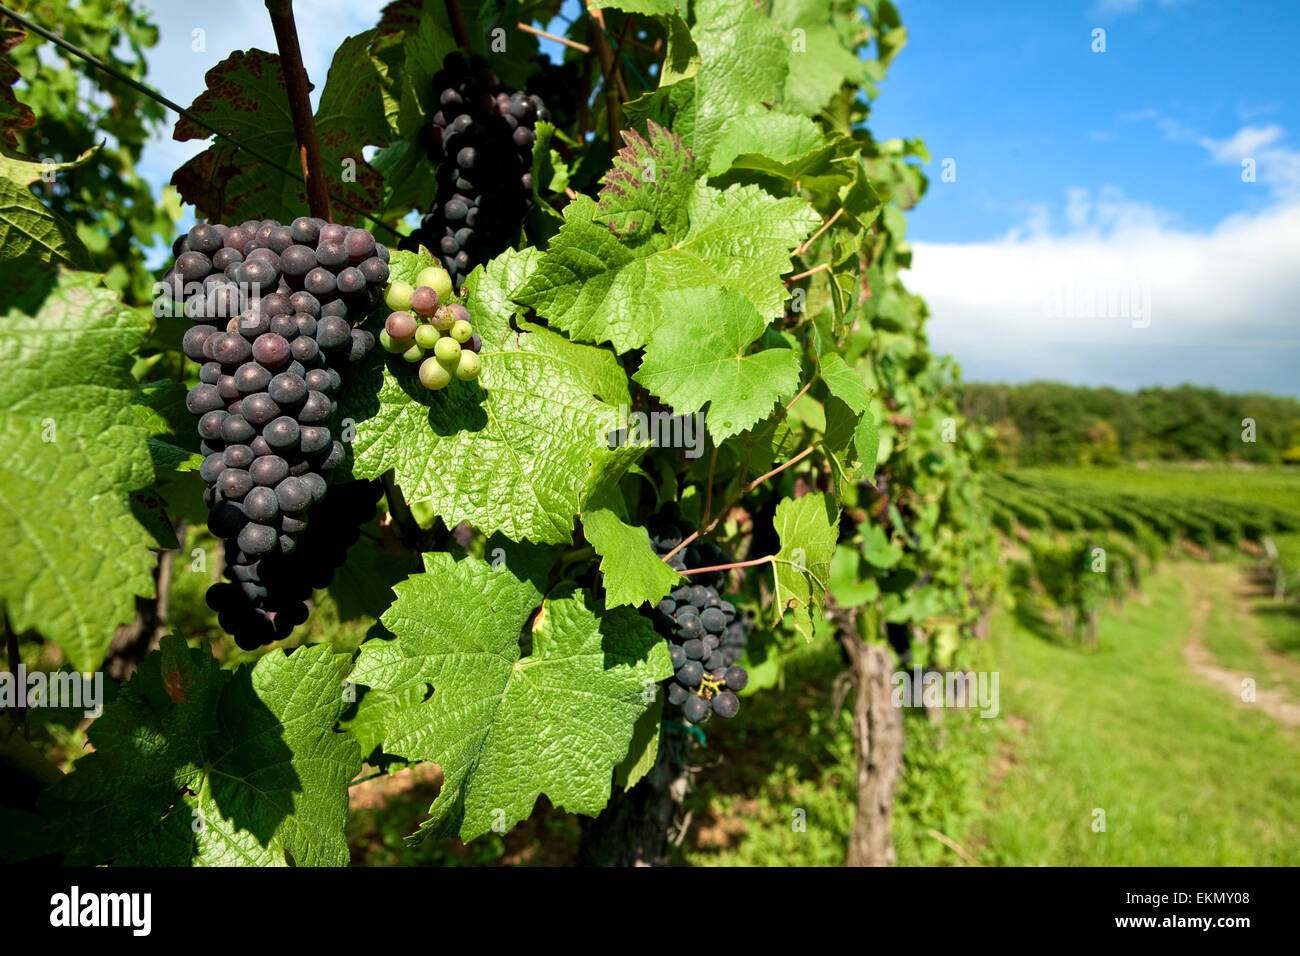 Grappes de raisins noirs cultivés pour la production de vin dans la région de l'Alsace, France. Banque D'Images